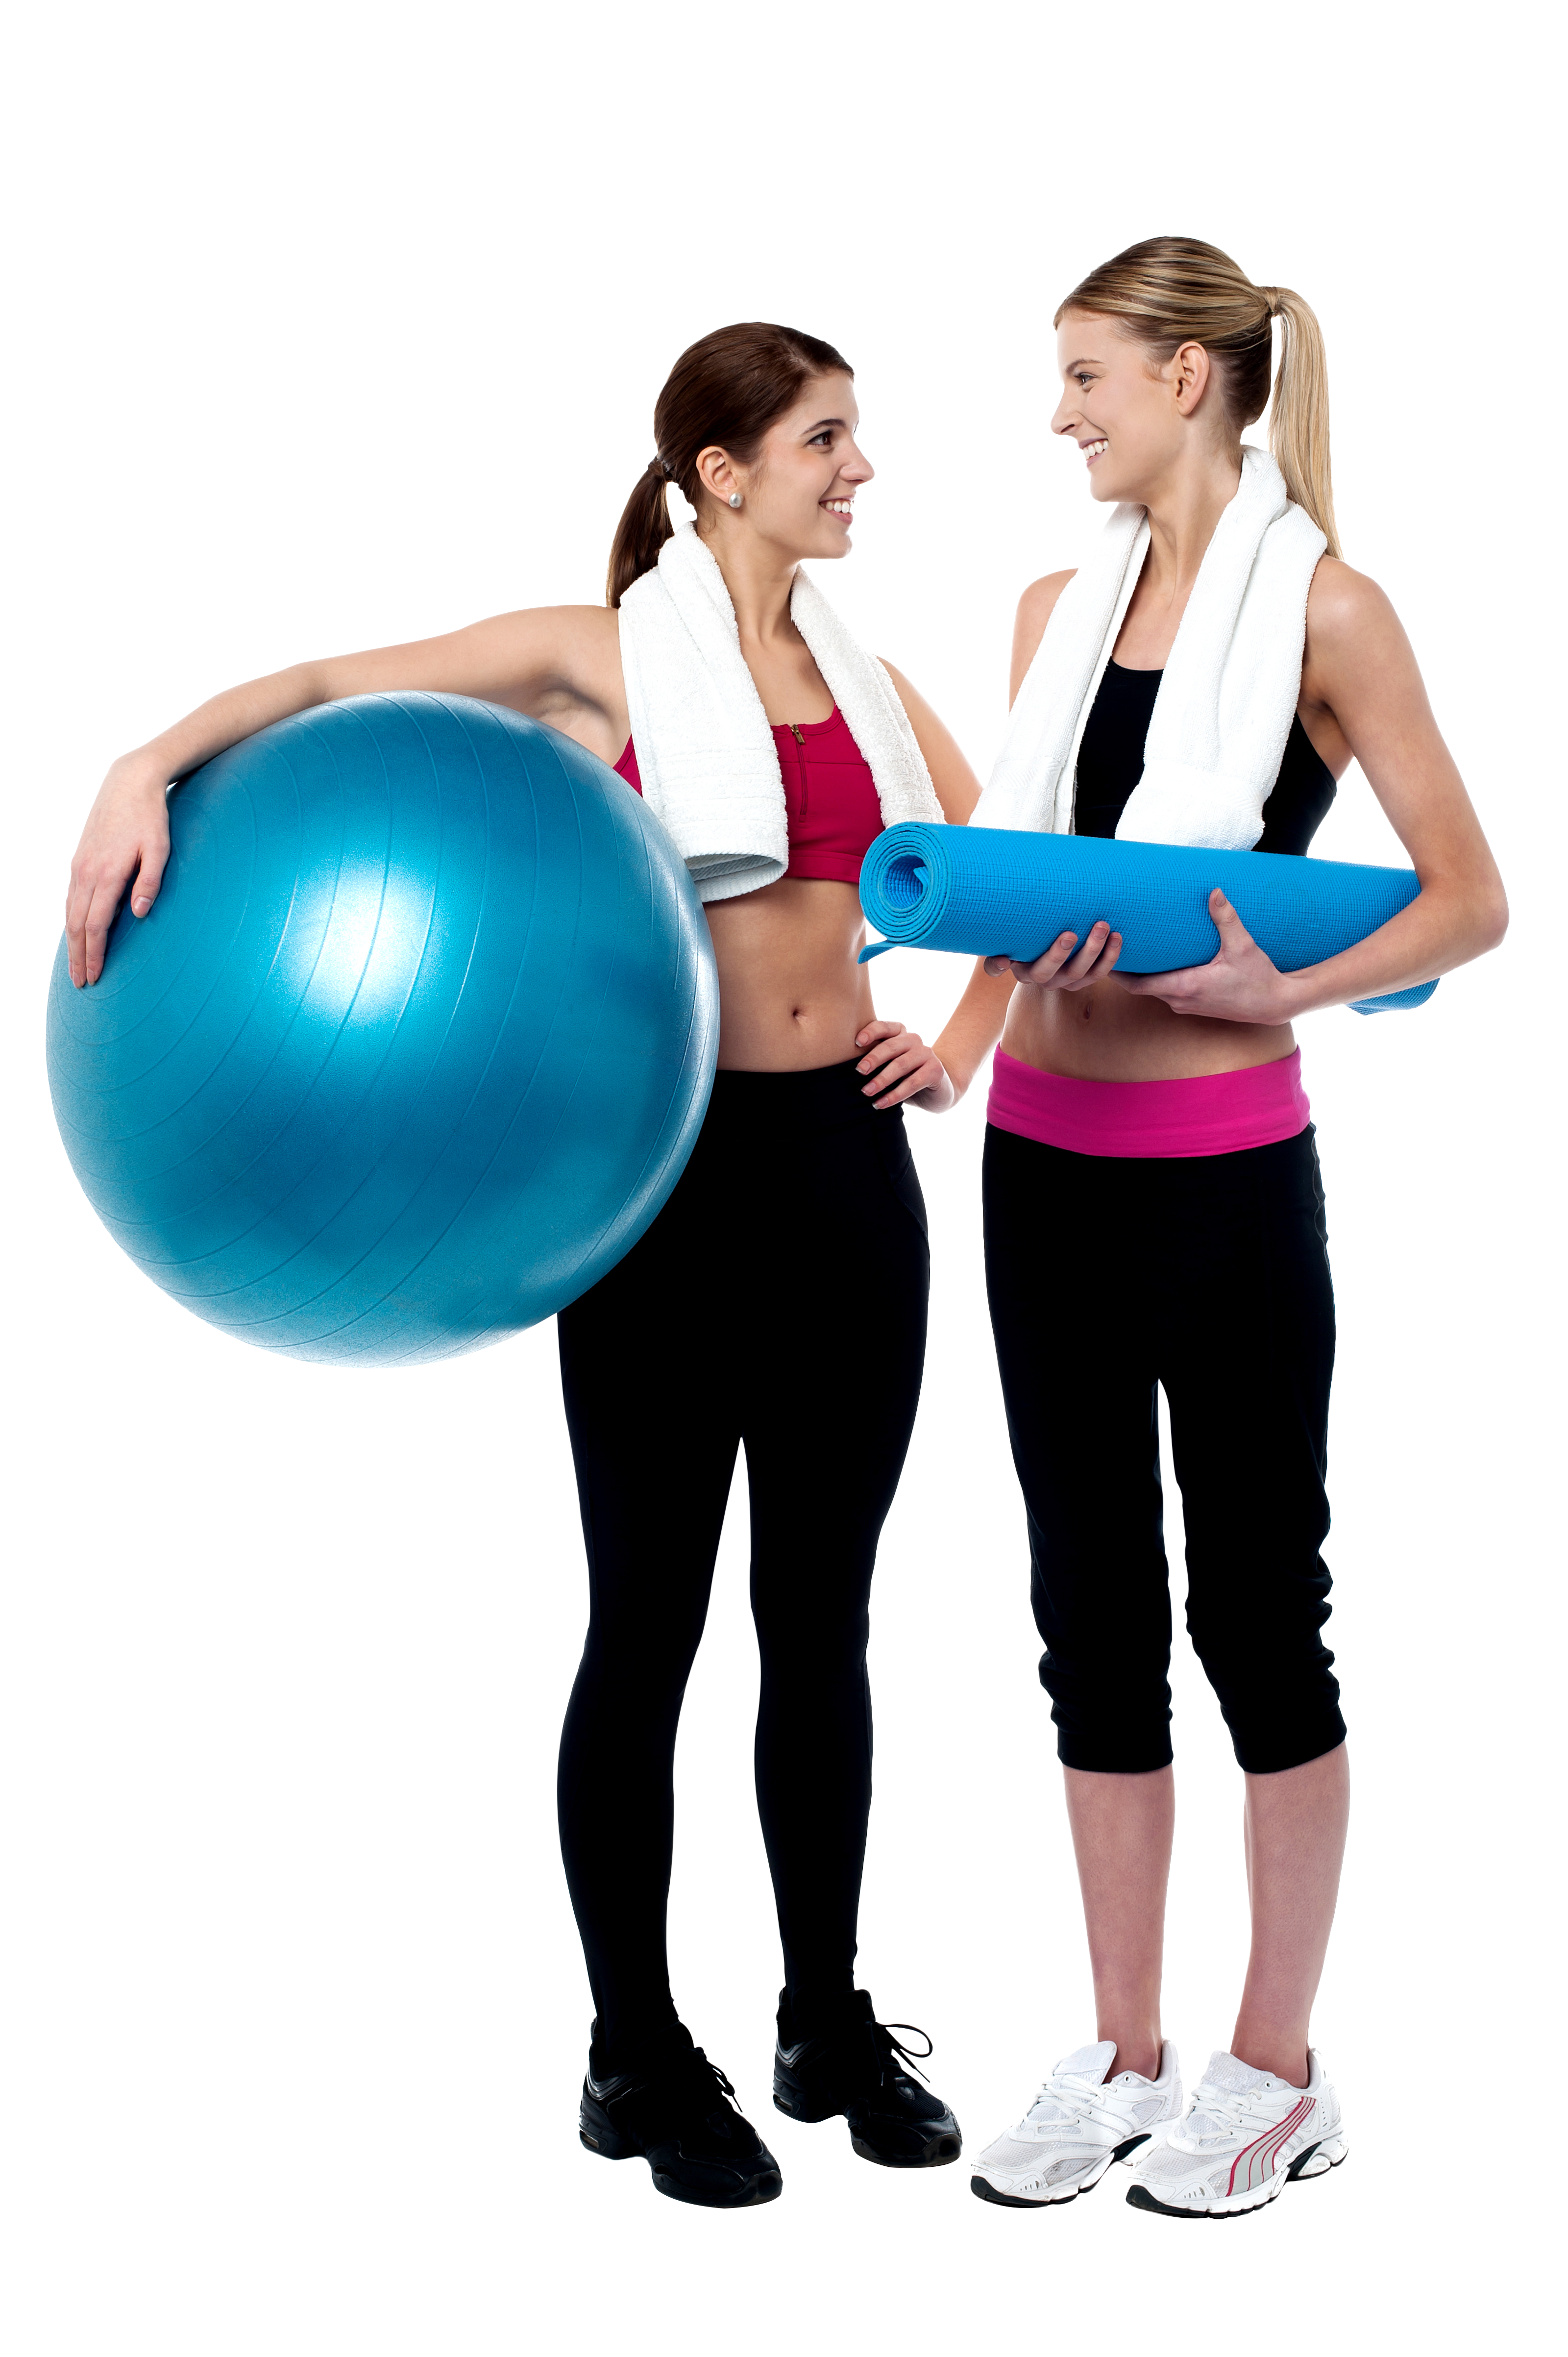 Women Exercising PNG Image